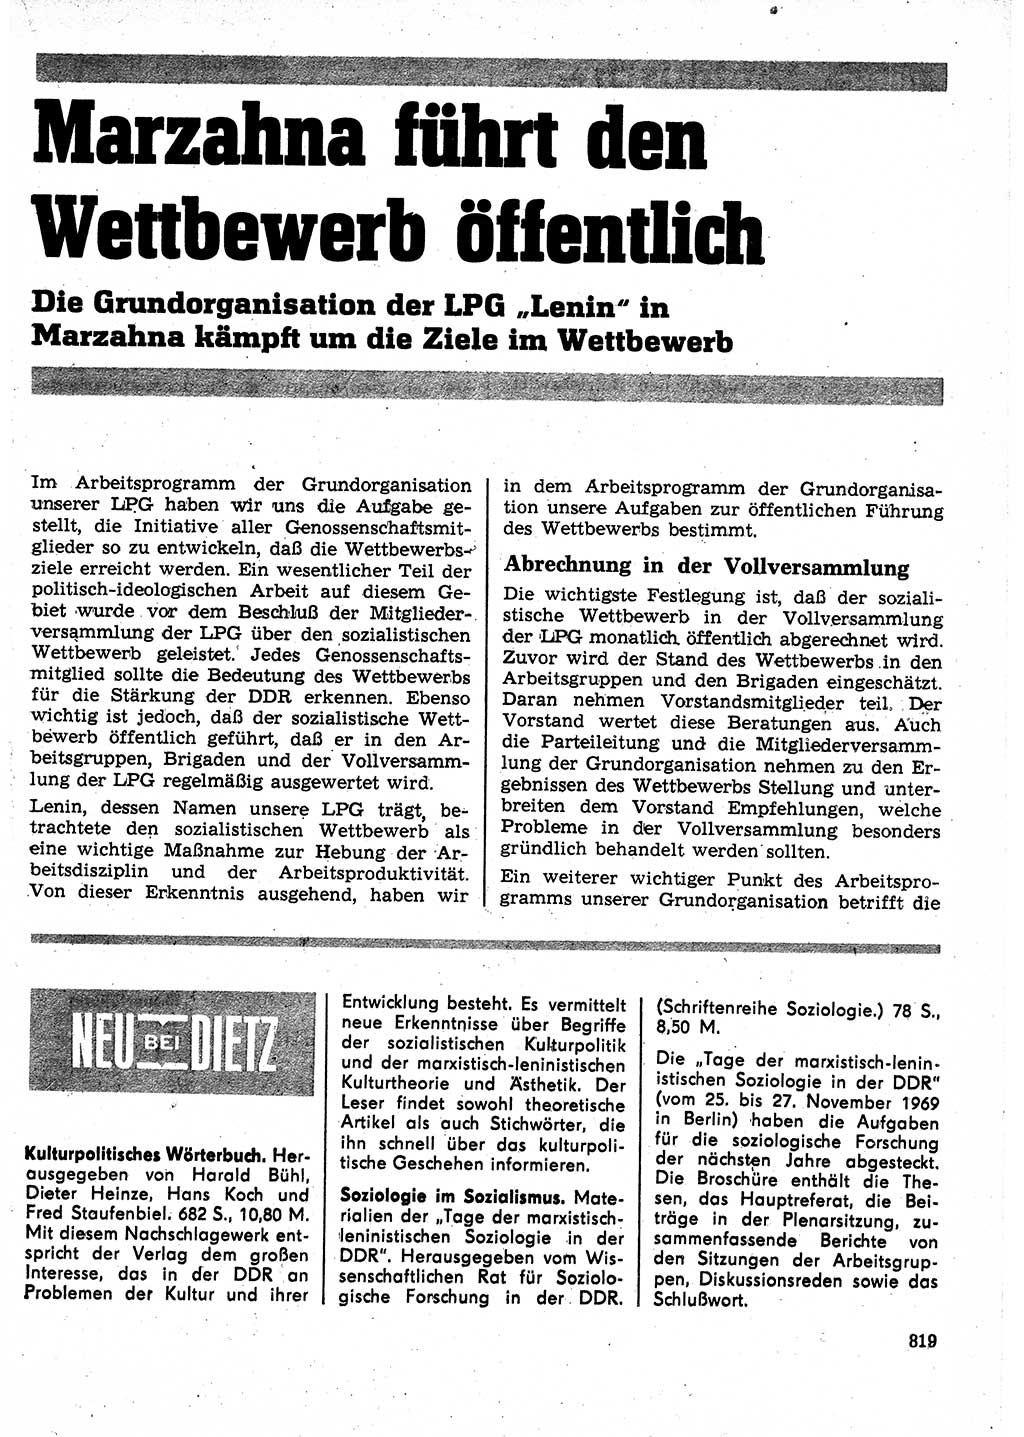 Neuer Weg (NW), Organ des Zentralkomitees (ZK) der SED (Sozialistische Einheitspartei Deutschlands) für Fragen des Parteilebens, 25. Jahrgang [Deutsche Demokratische Republik (DDR)] 1970, Seite 819 (NW ZK SED DDR 1970, S. 819)